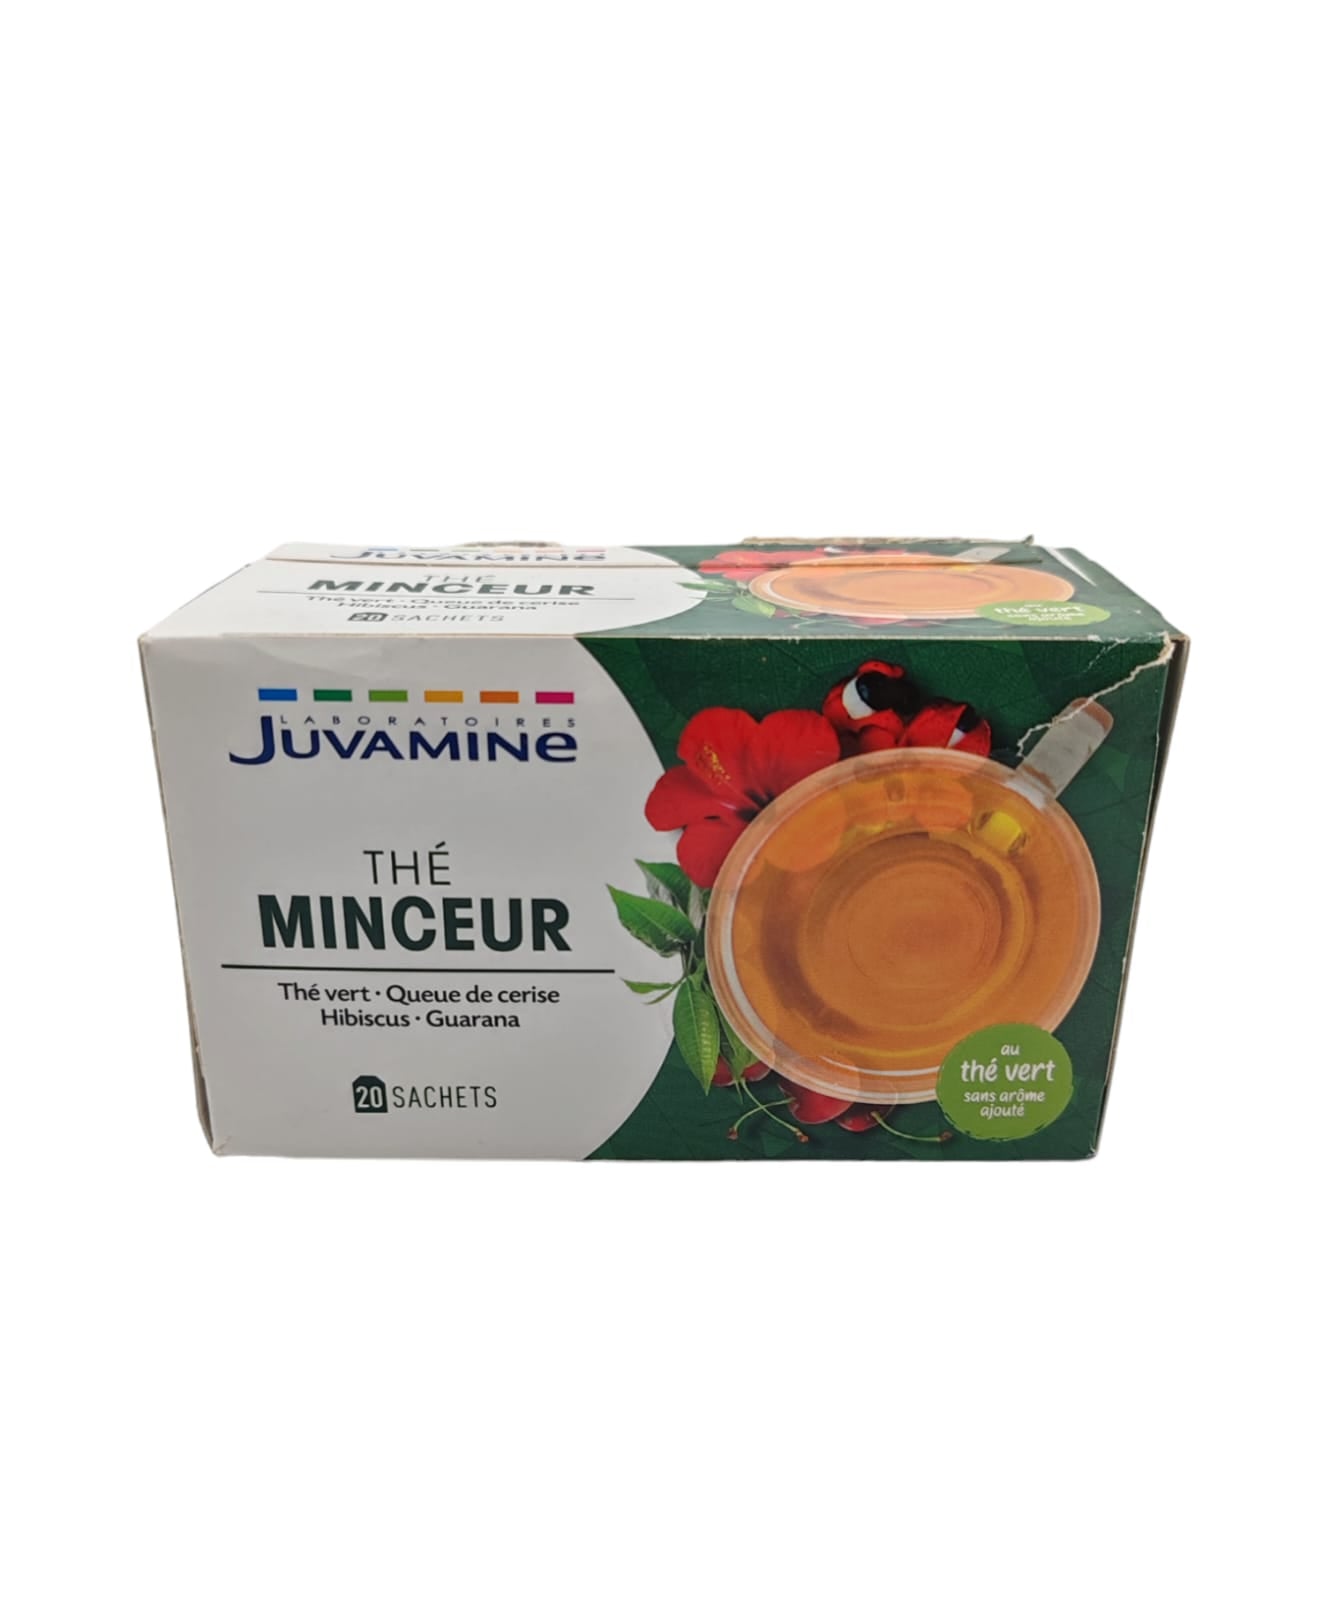 Зеленый травяной чай для похудения Juvamine, 20 пакетиков, поврежденная упаковка, ЛОТ 822132021721